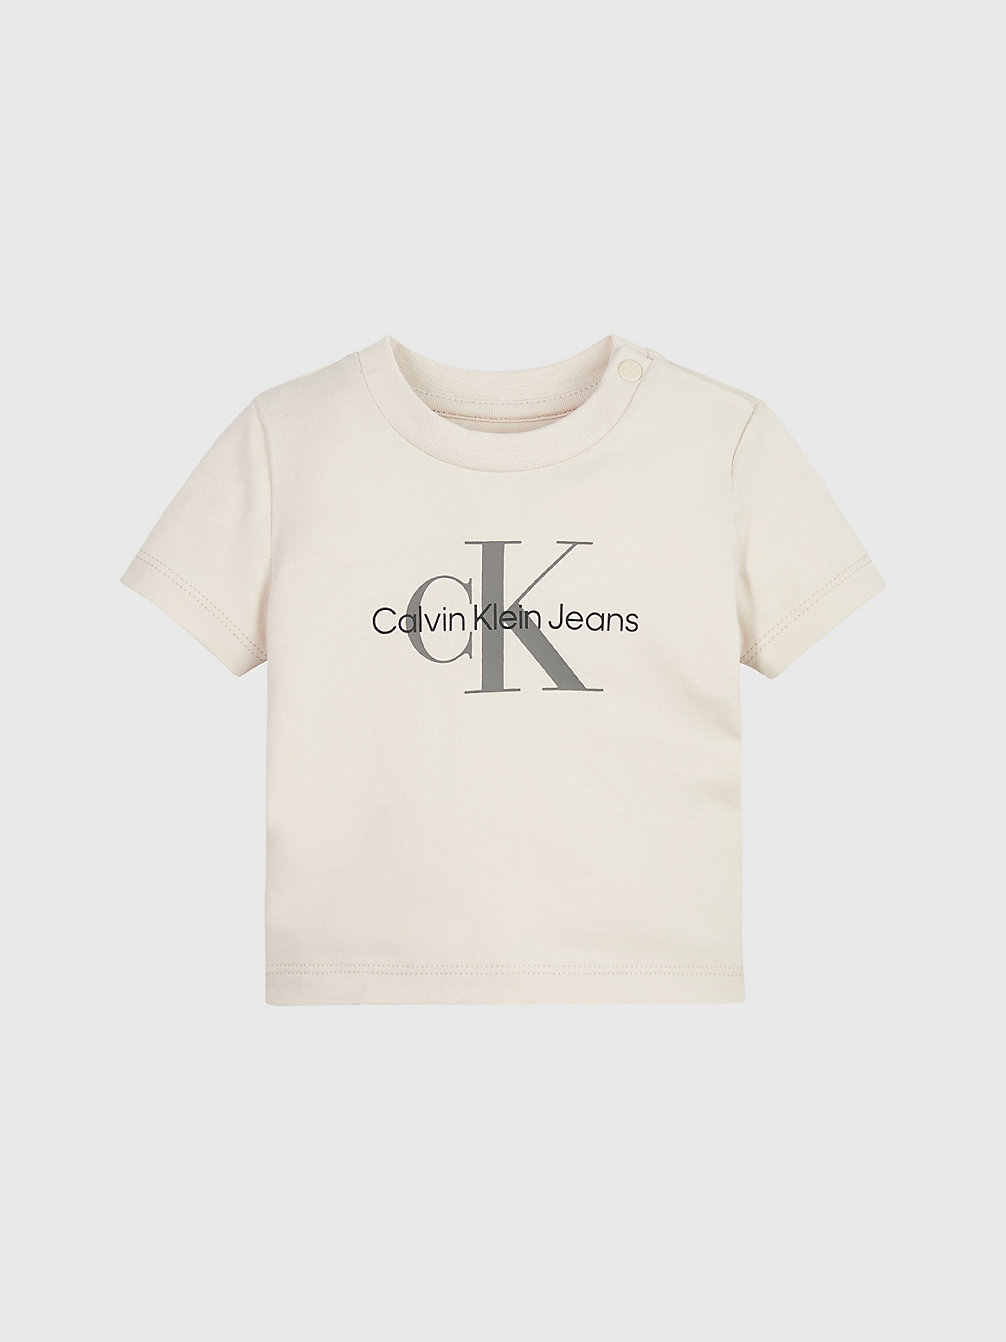 WHITECAP GRAY Baby-T-Shirt Mit Logo undefined newborn Calvin Klein